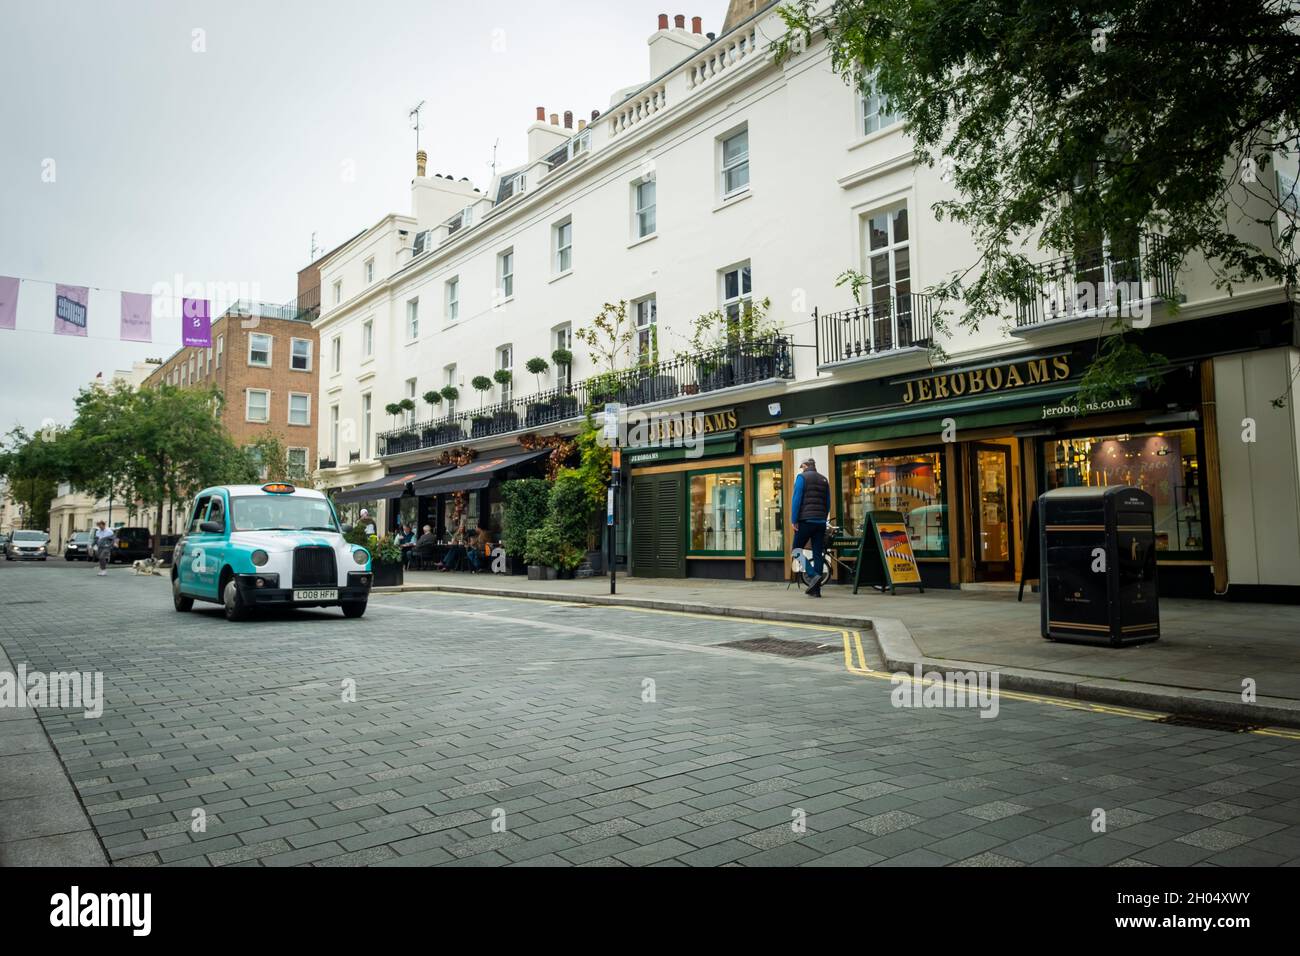 London - Oktober 2021: Elizabeth Street in Belgravia, eine gehobene Straße mit Geschäften und Restaurants in der Nähe der Victoria Station Stockfoto